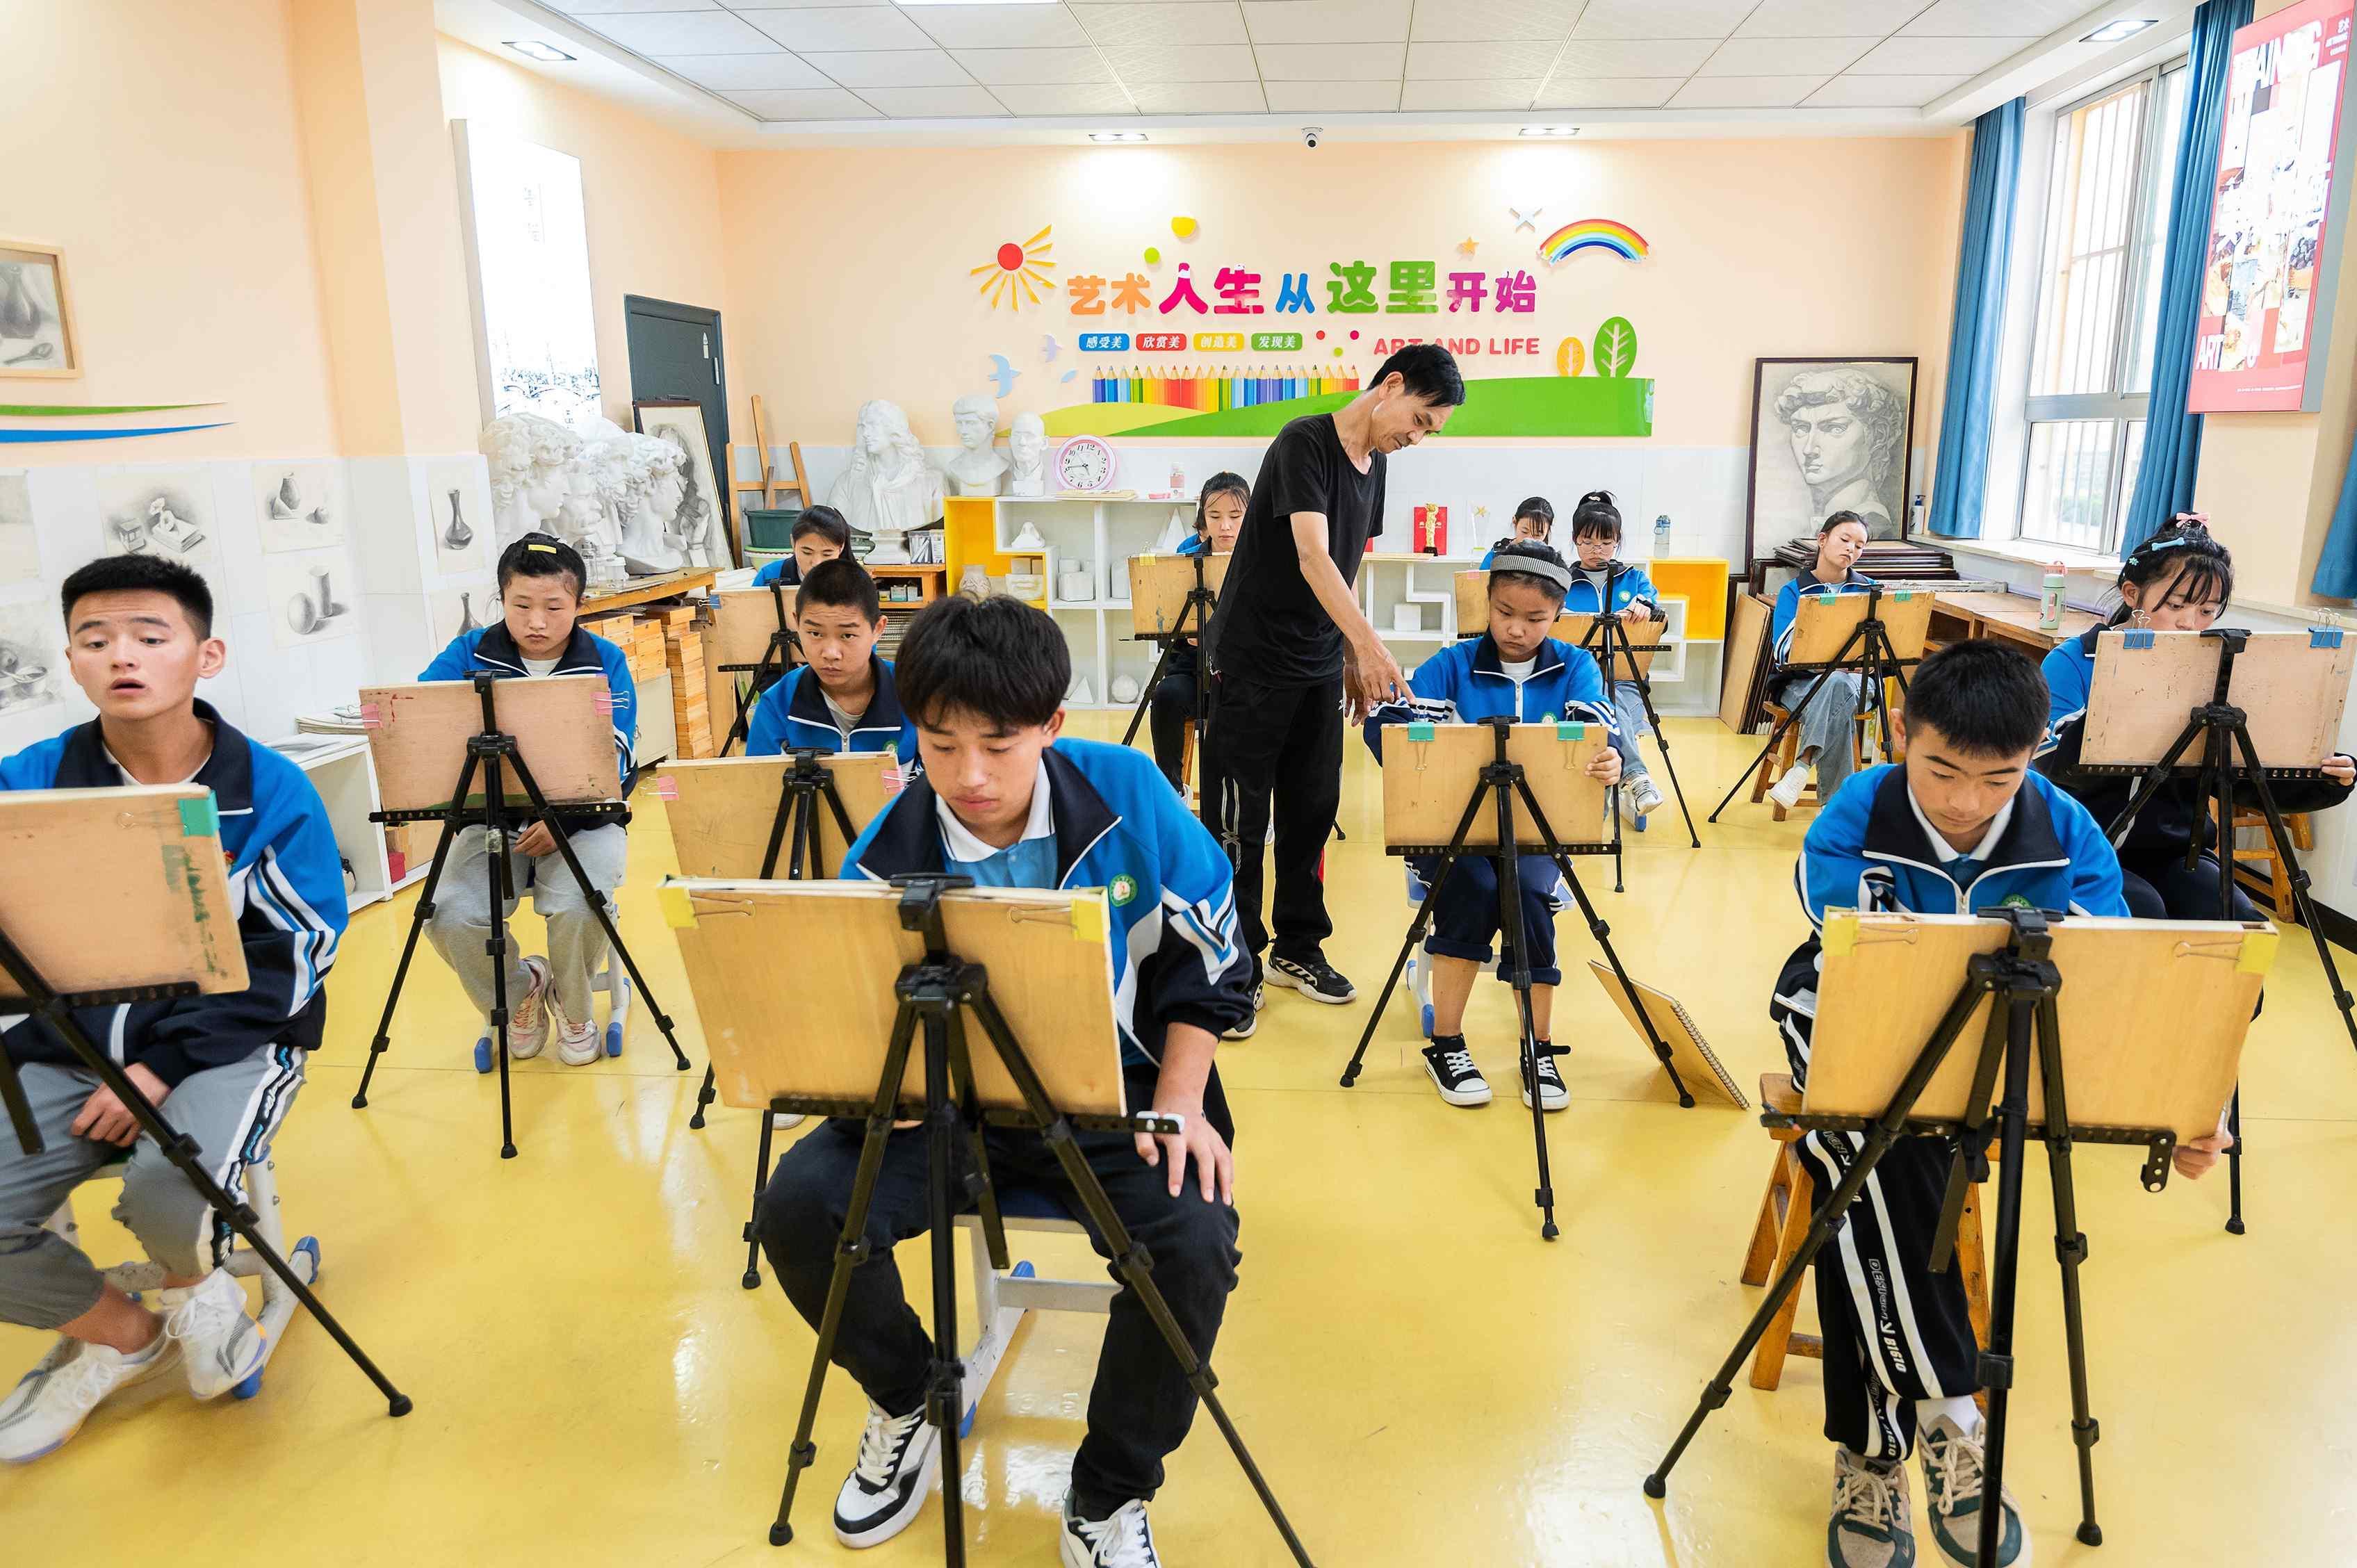 慶陽市積極深化教育改革提升教育質效